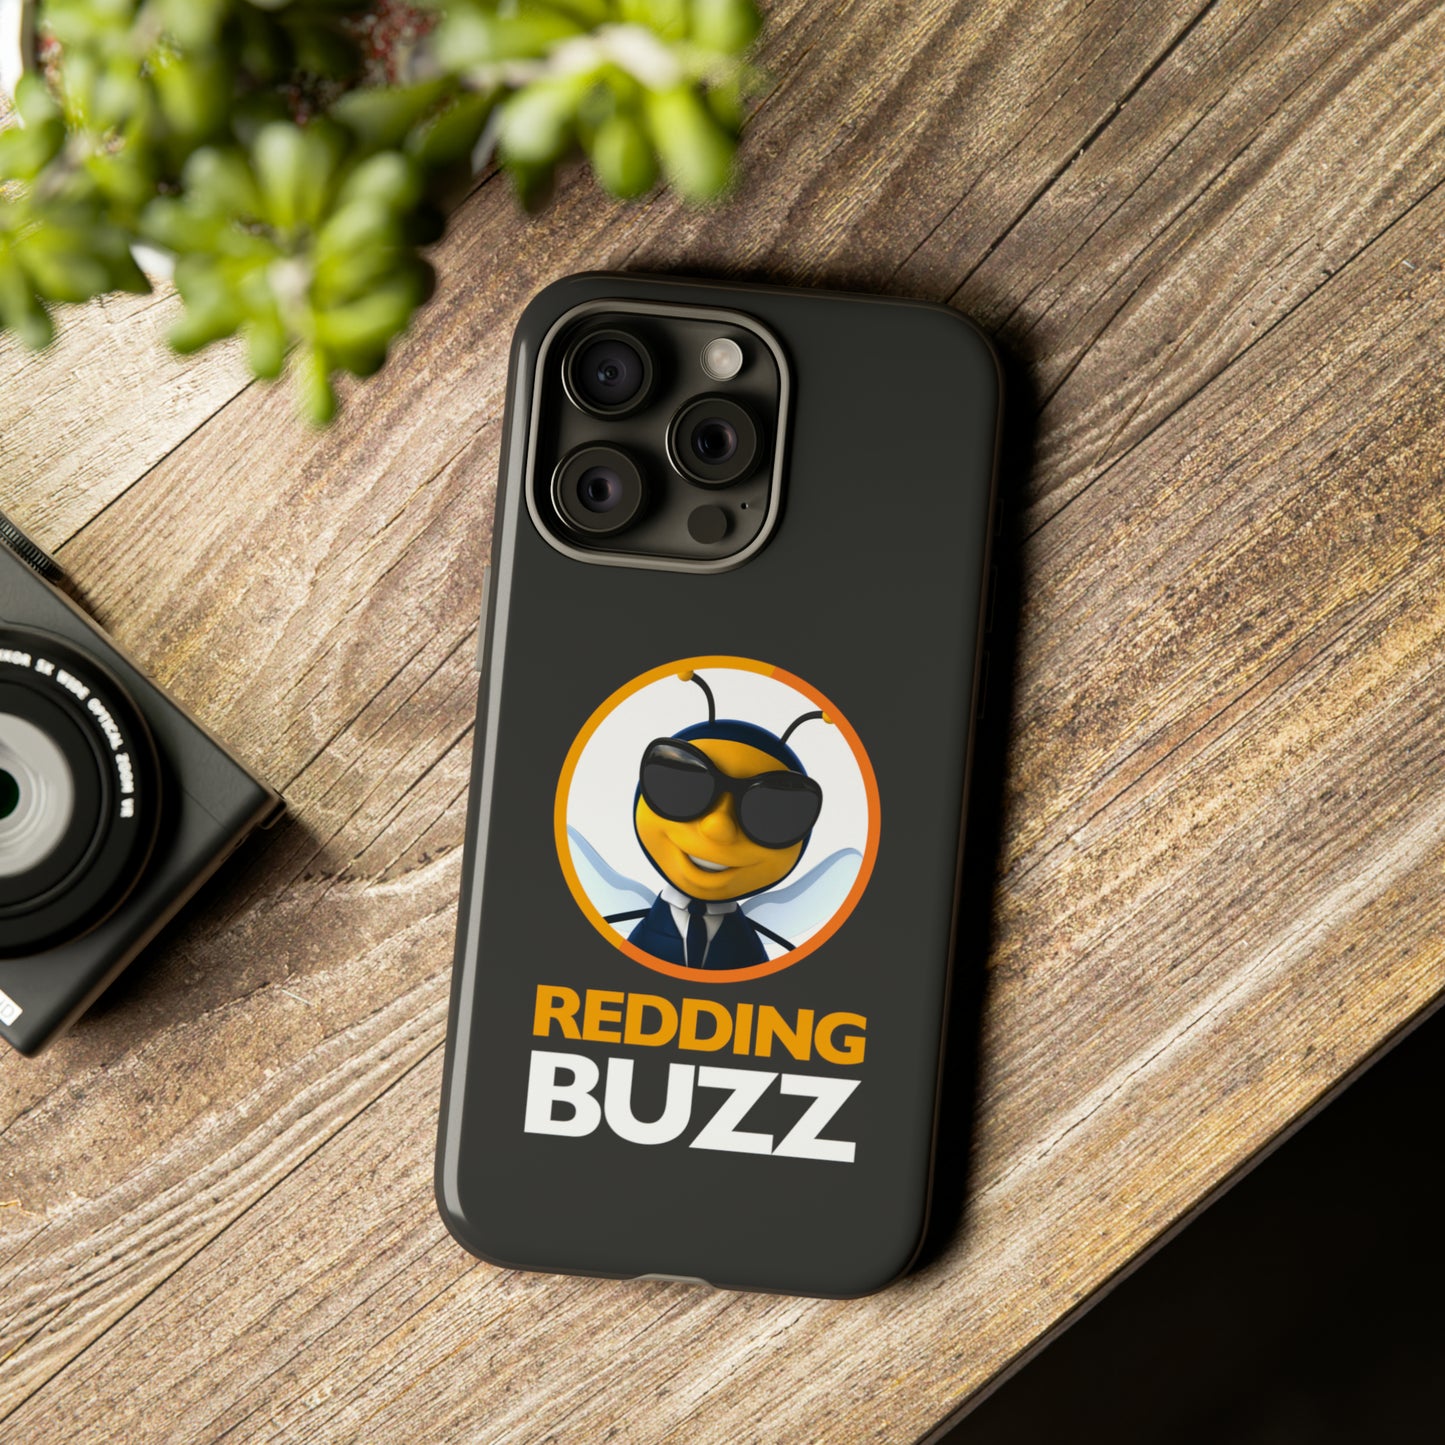 Hive Guard Tough Case: Redding Buzz Protective Phone Case